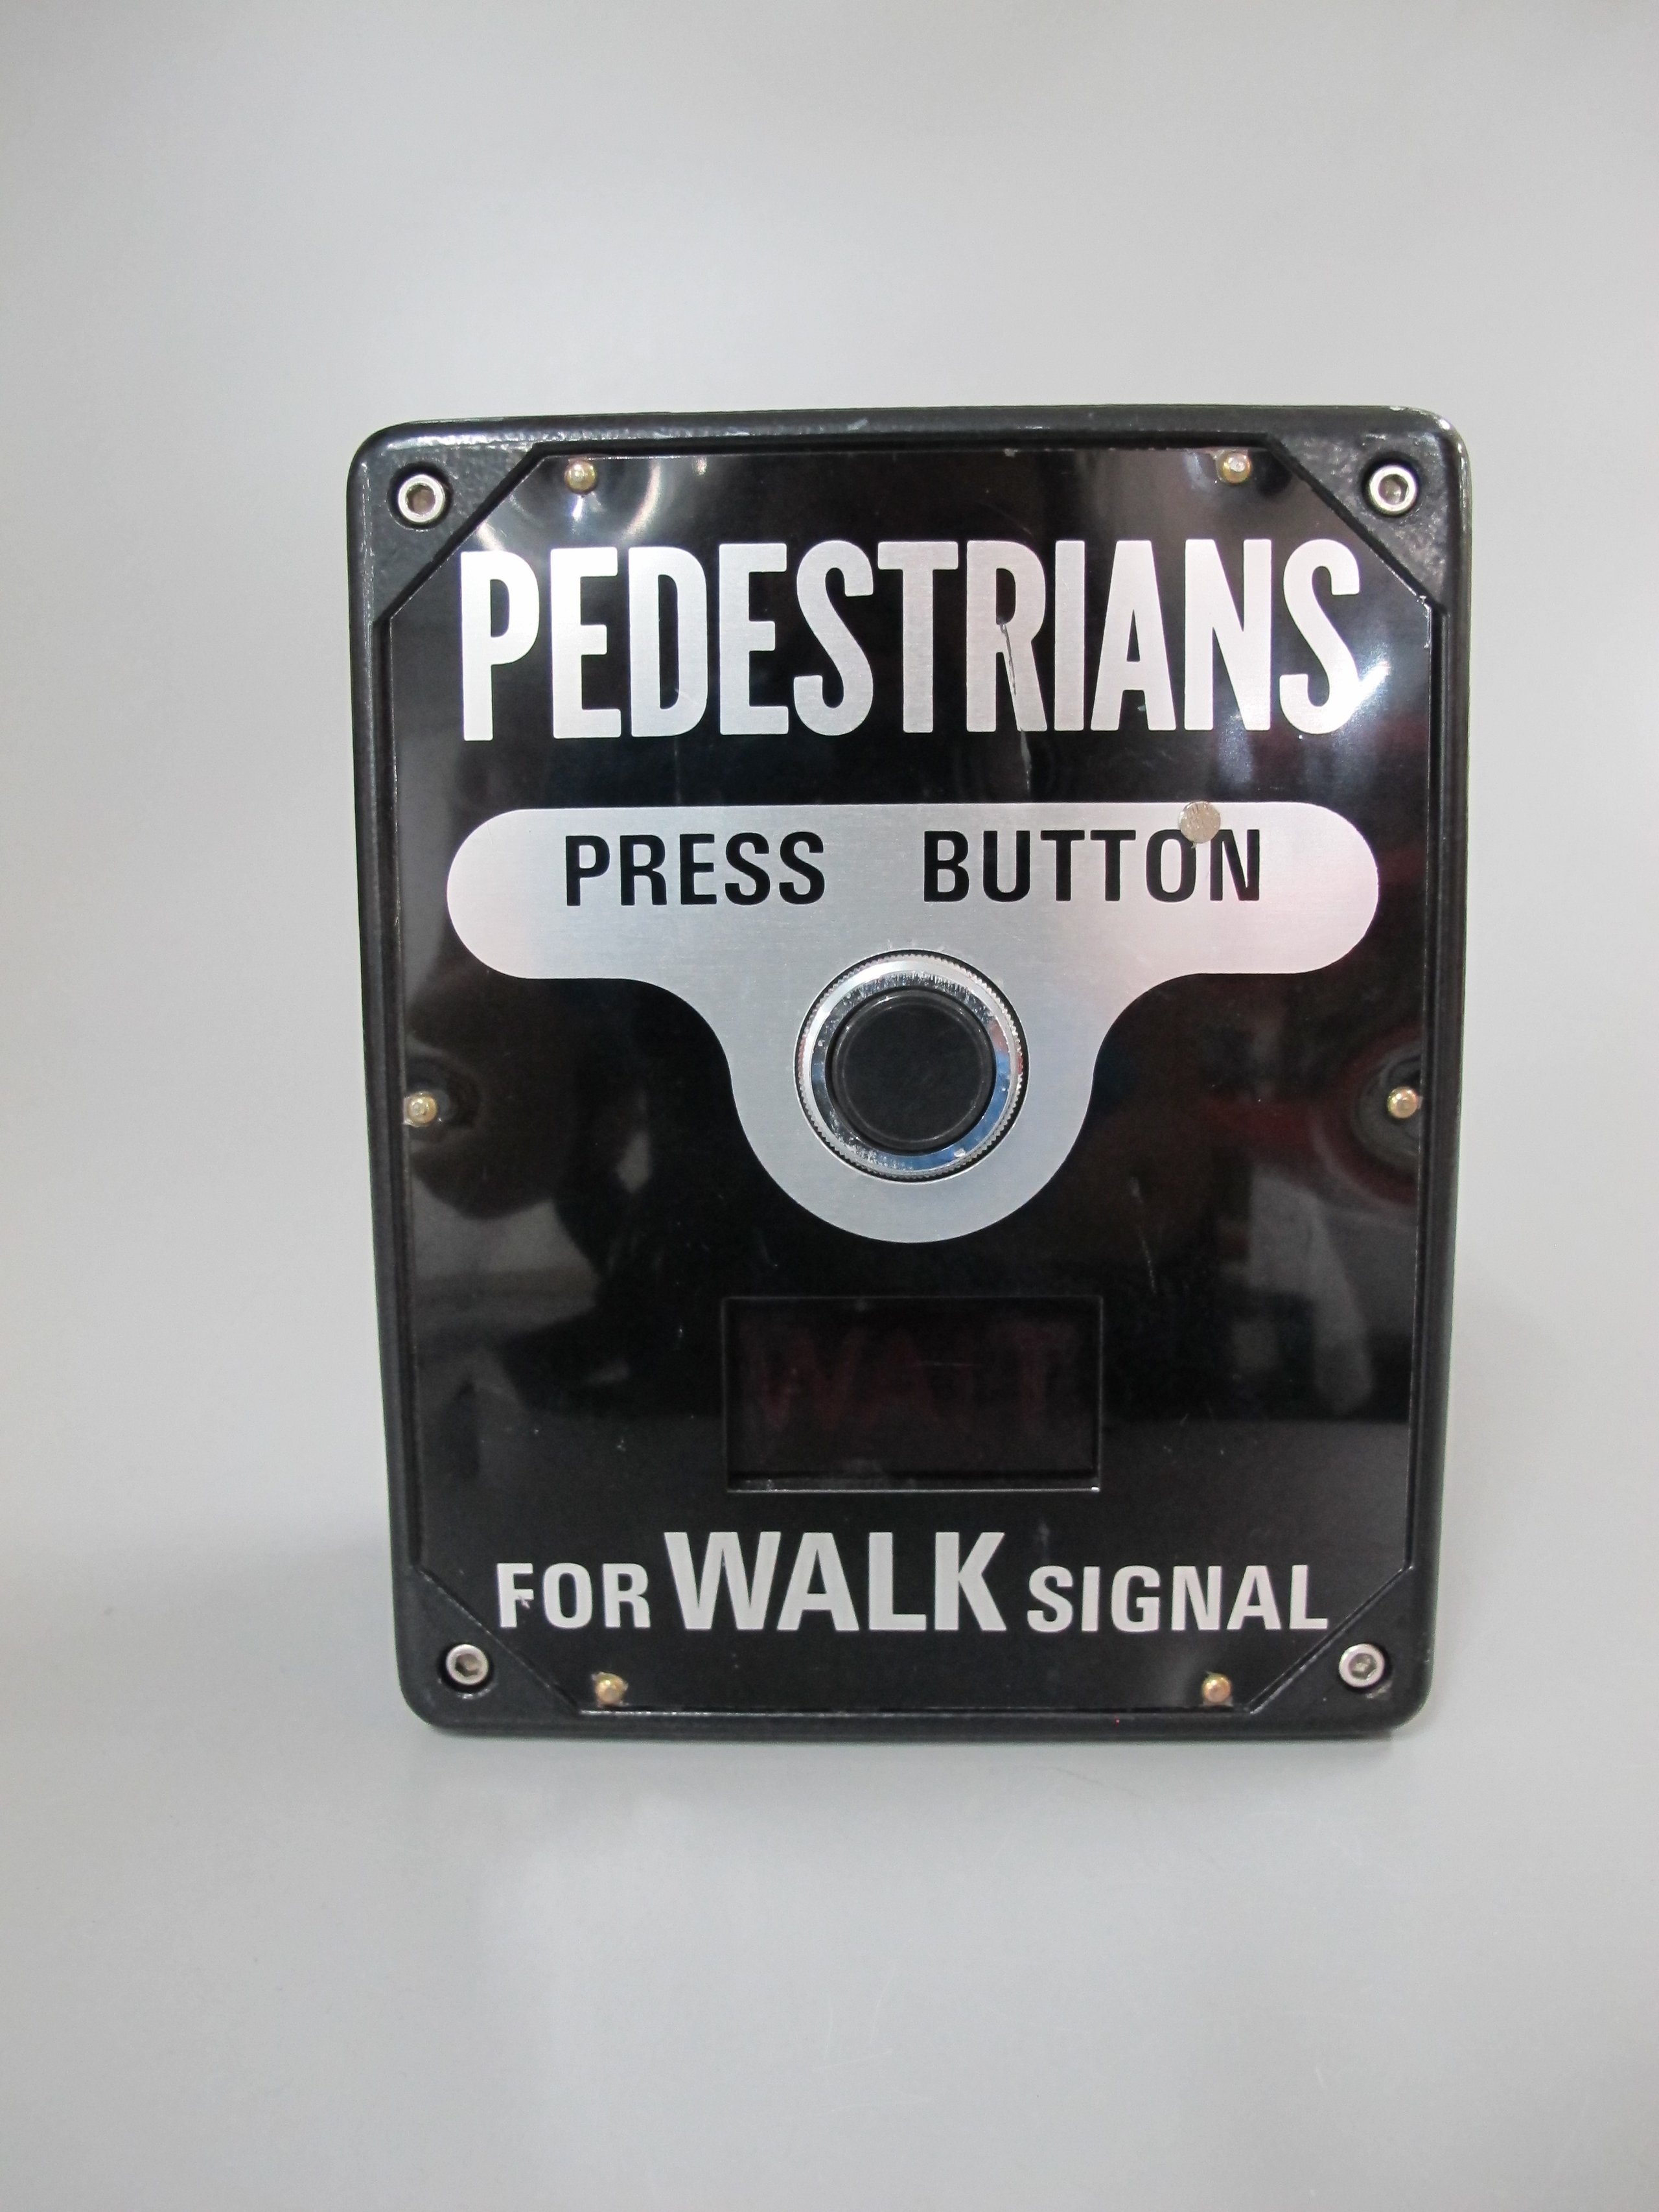 Traffic light pedestrian crossing buttons